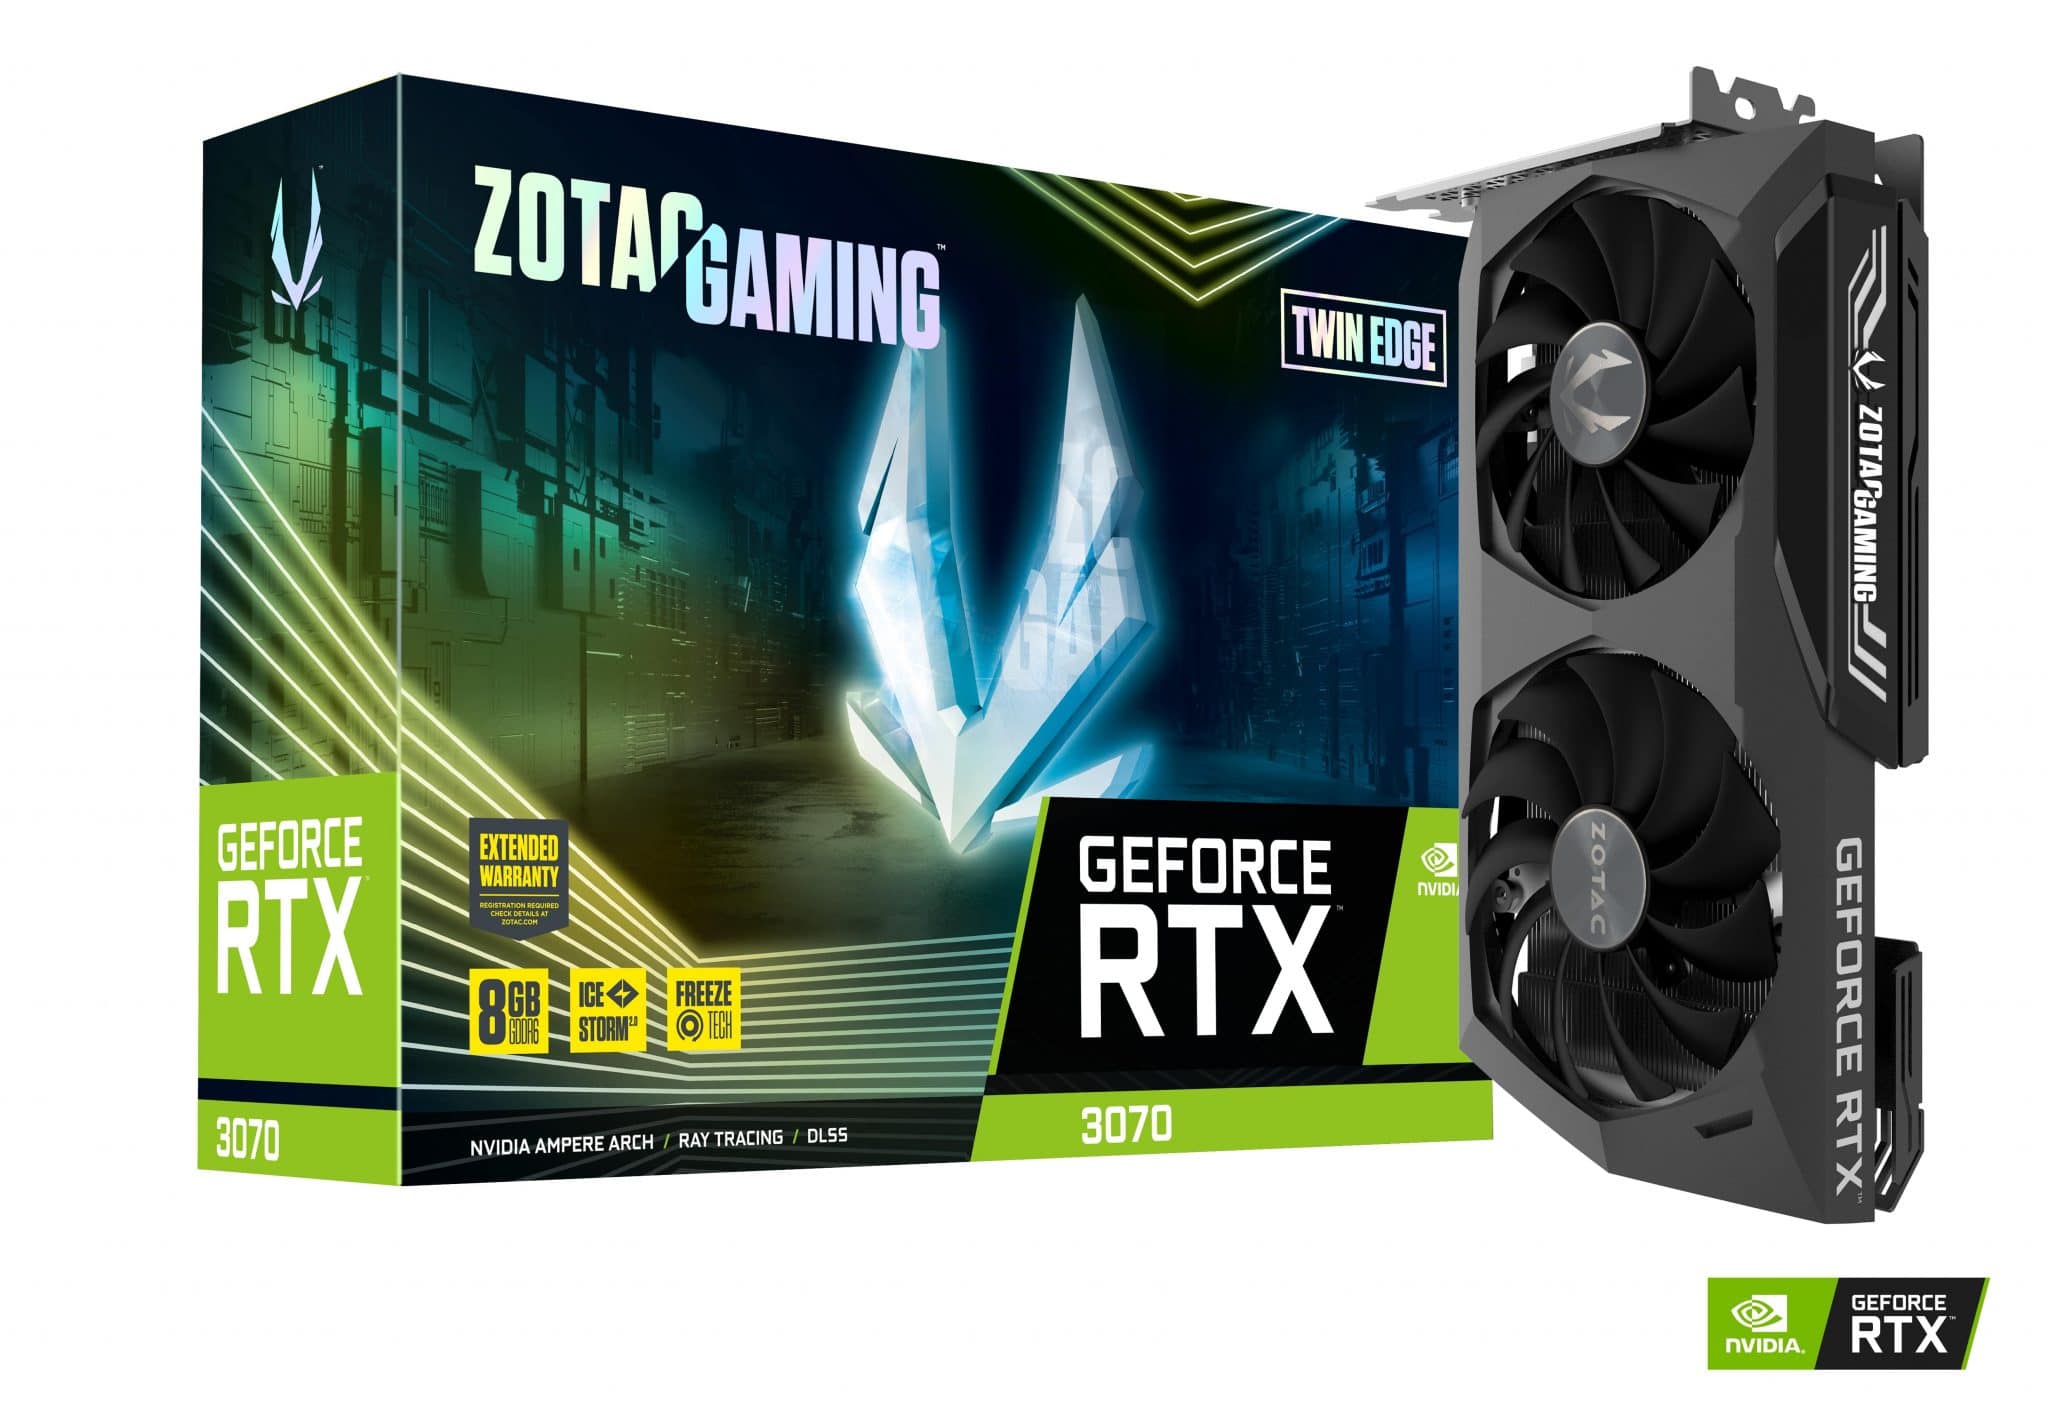 ZOTAC GAMING GeForce RTX 30 Series ra mắt, sử dụng các vi xử lý đồ họa dựa trên kiến trúc Ampere của NVIDIA